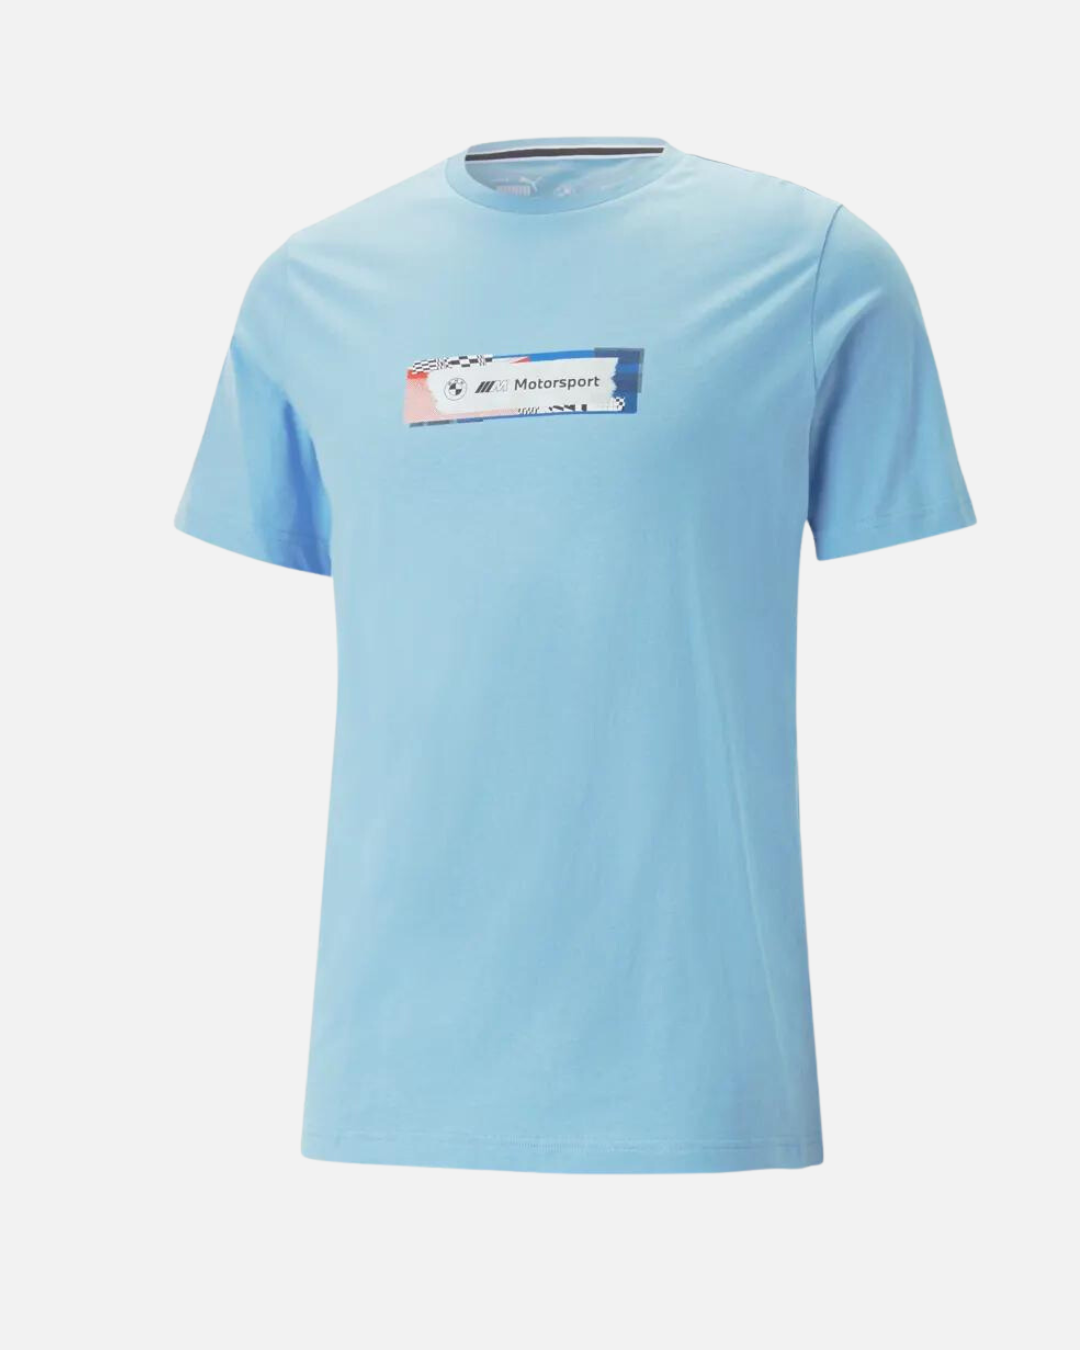 Puma BMW Motorsport Statement T-shirt - Blue – Footkorner